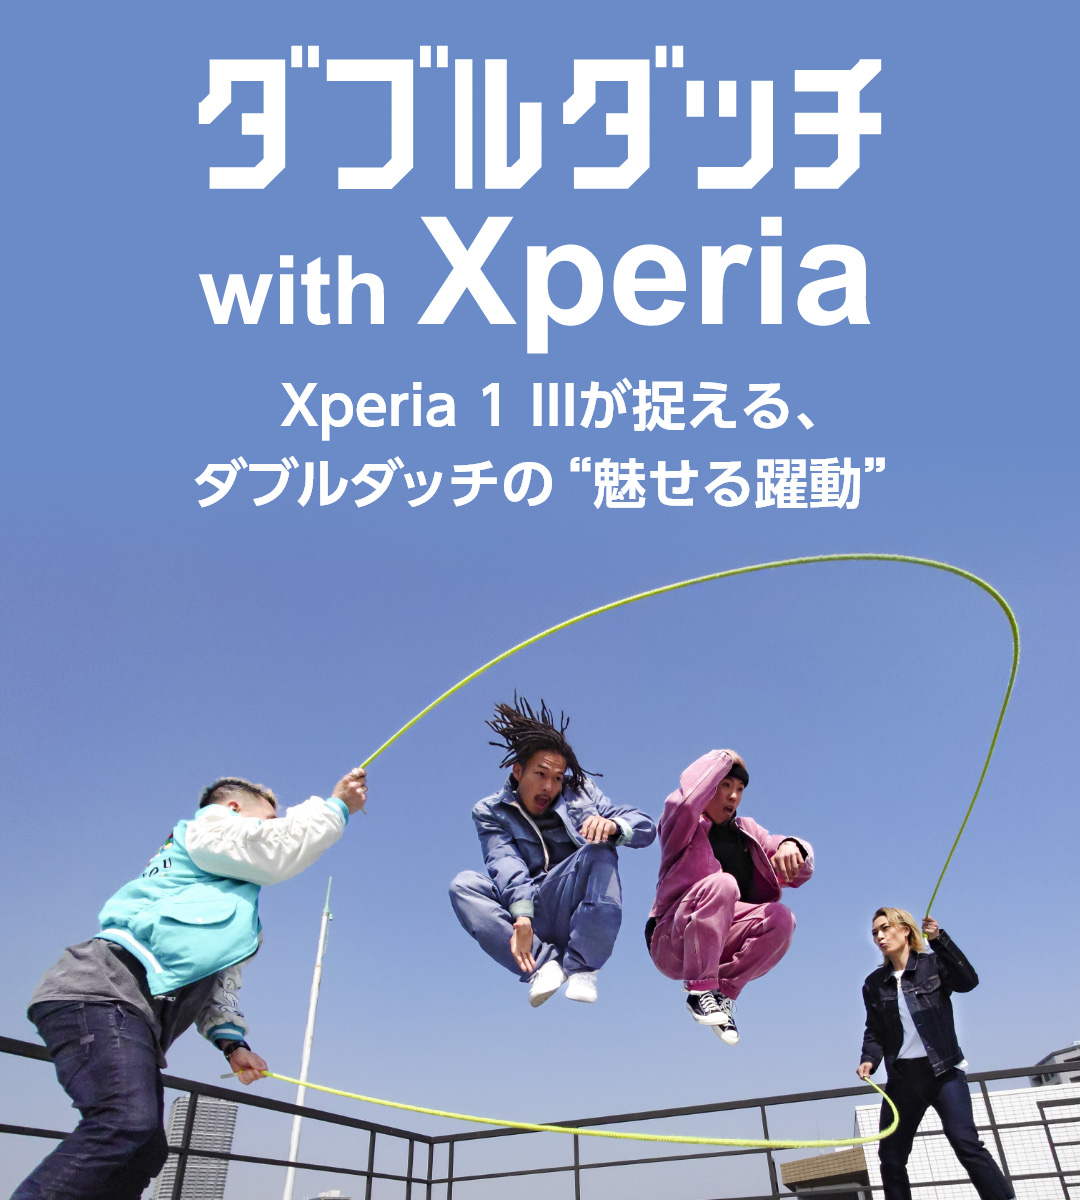 ダブルダッチ with Xperia Xperia 1 IIIが捉える、ダブルダッチの“魅せる躍動”